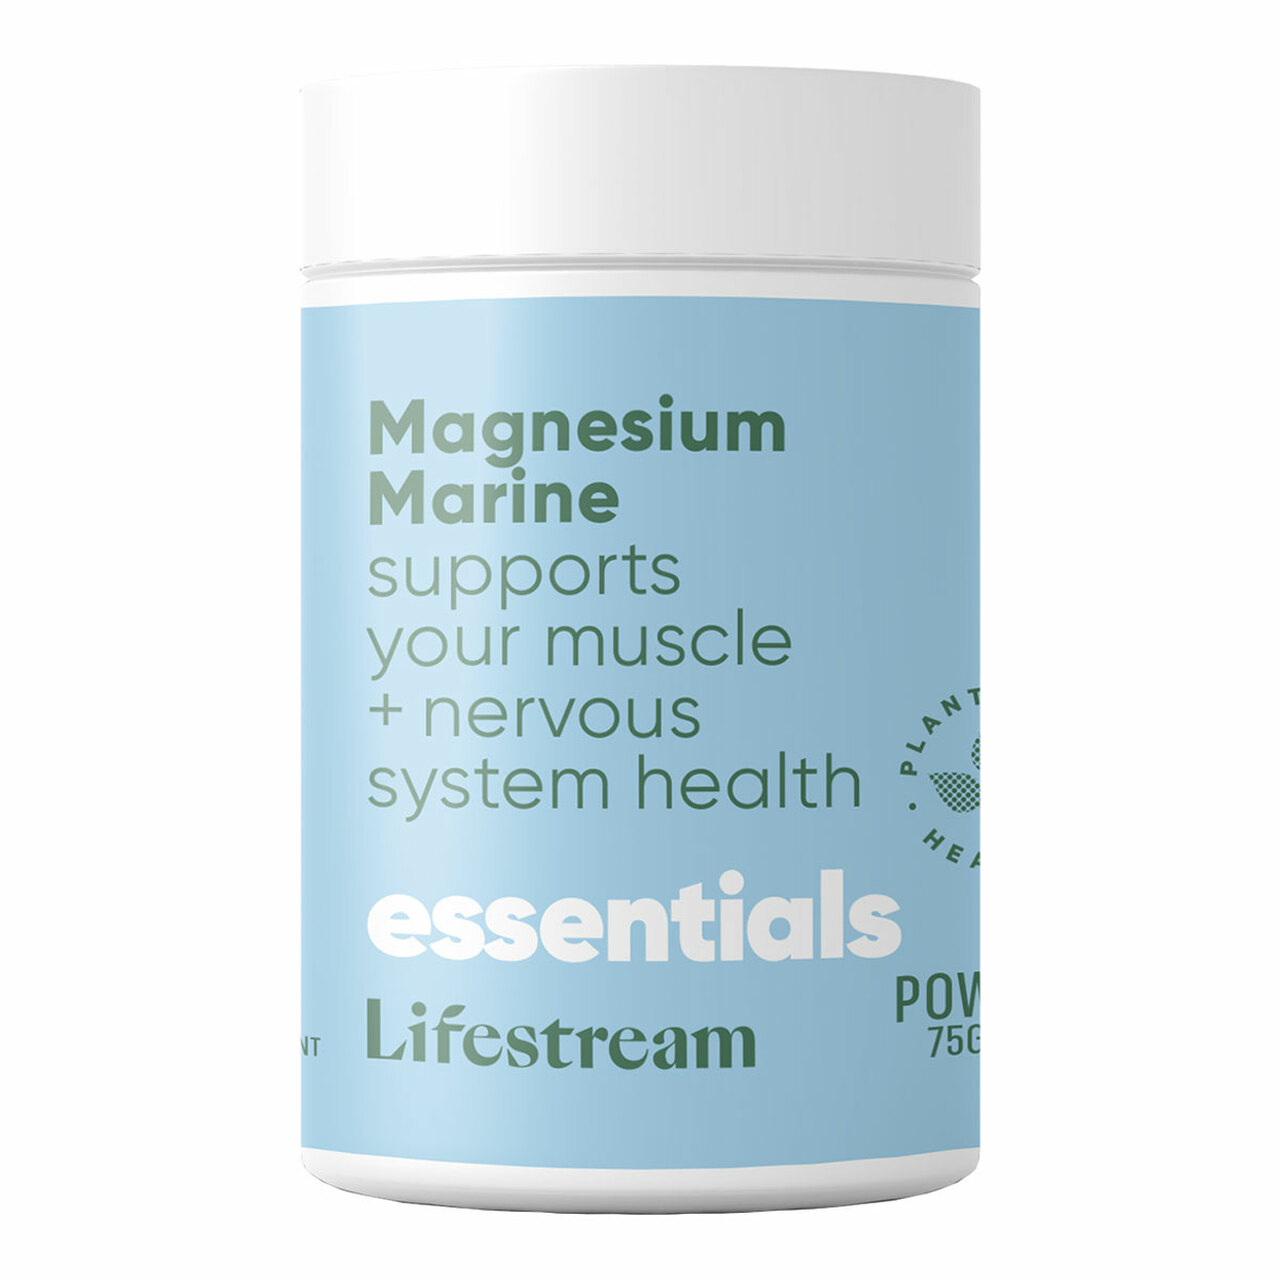 Lifestream Natural Magnesium 75g Powder